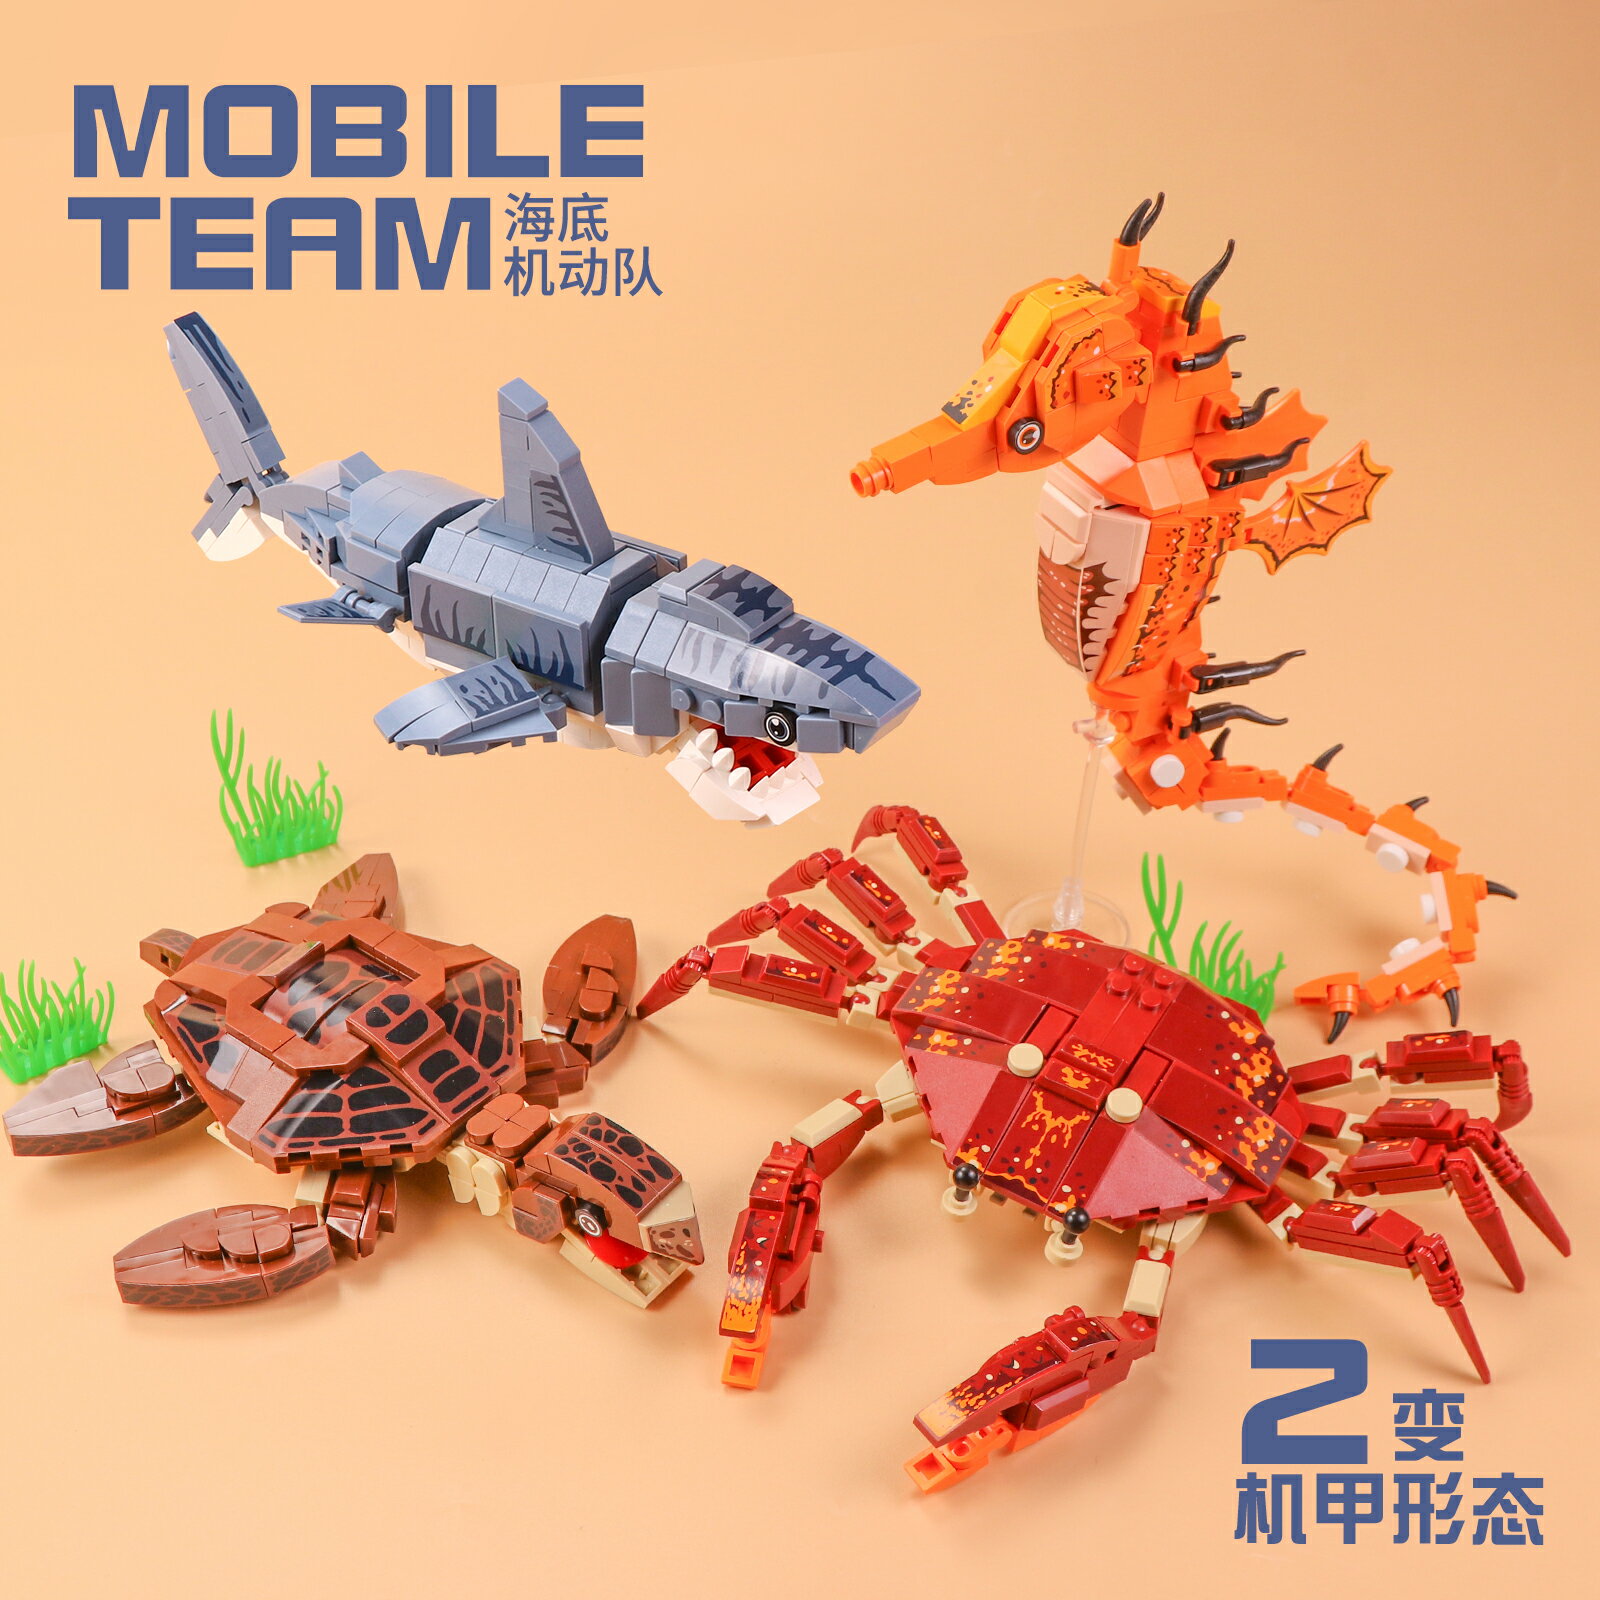 中國積木海洋底世界兒童海洋館生物動物男孩益智拼裝模型禮物玩具